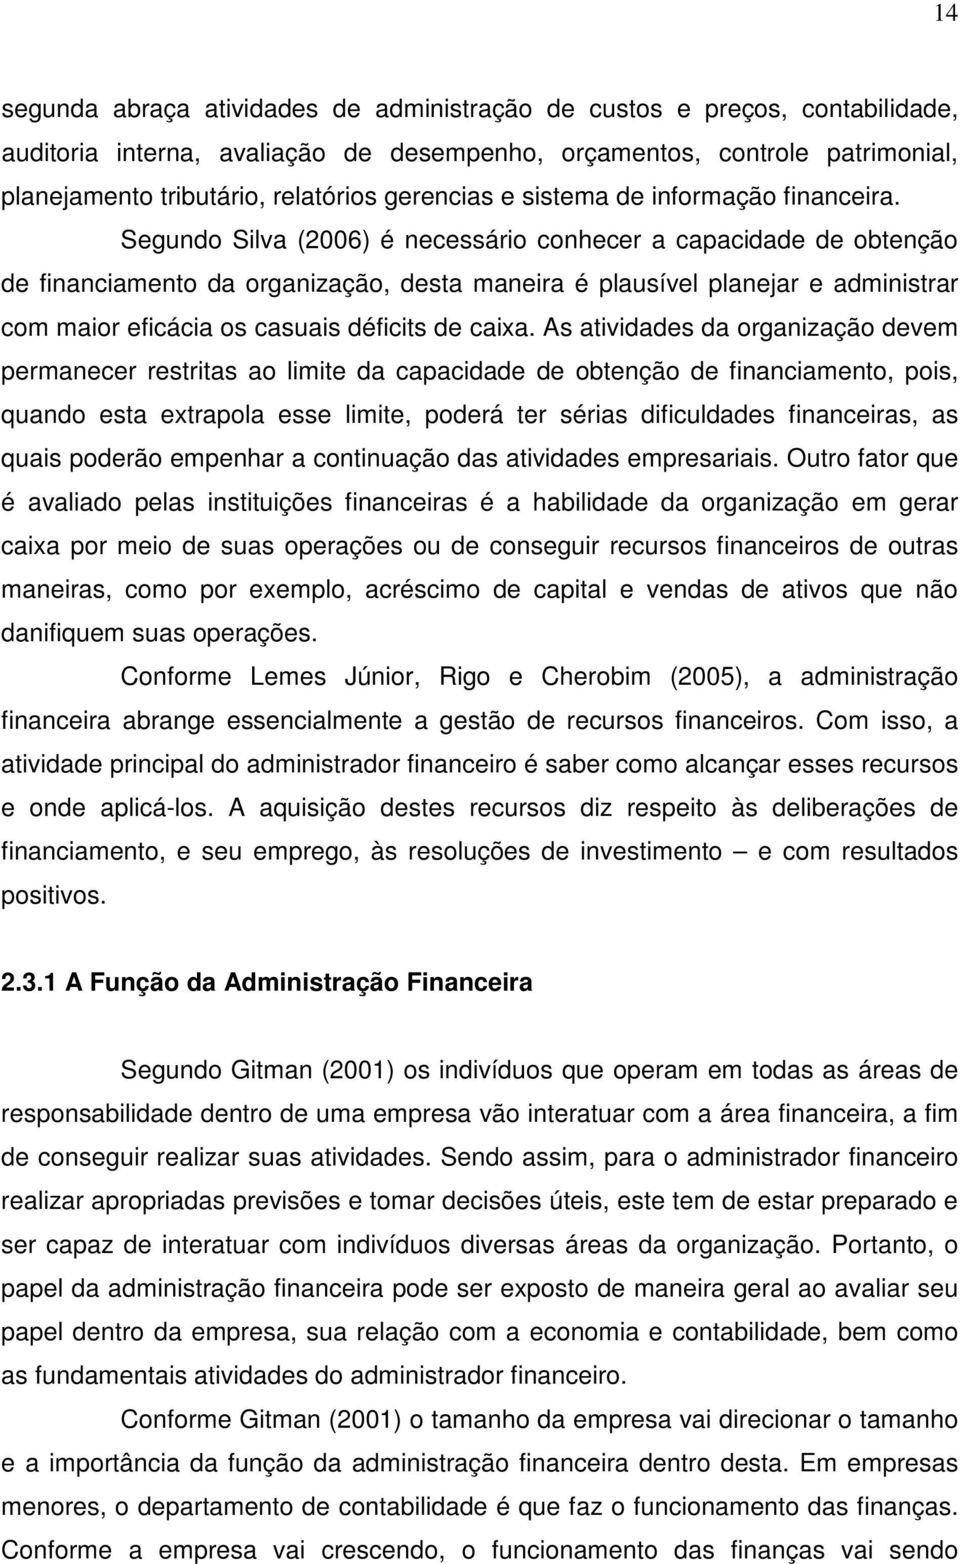 Segundo Silva (2006) é necessário conhecer a capacidade de obtenção de financiamento da organização, desta maneira é plausível planejar e administrar com maior eficácia os casuais déficits de caixa.